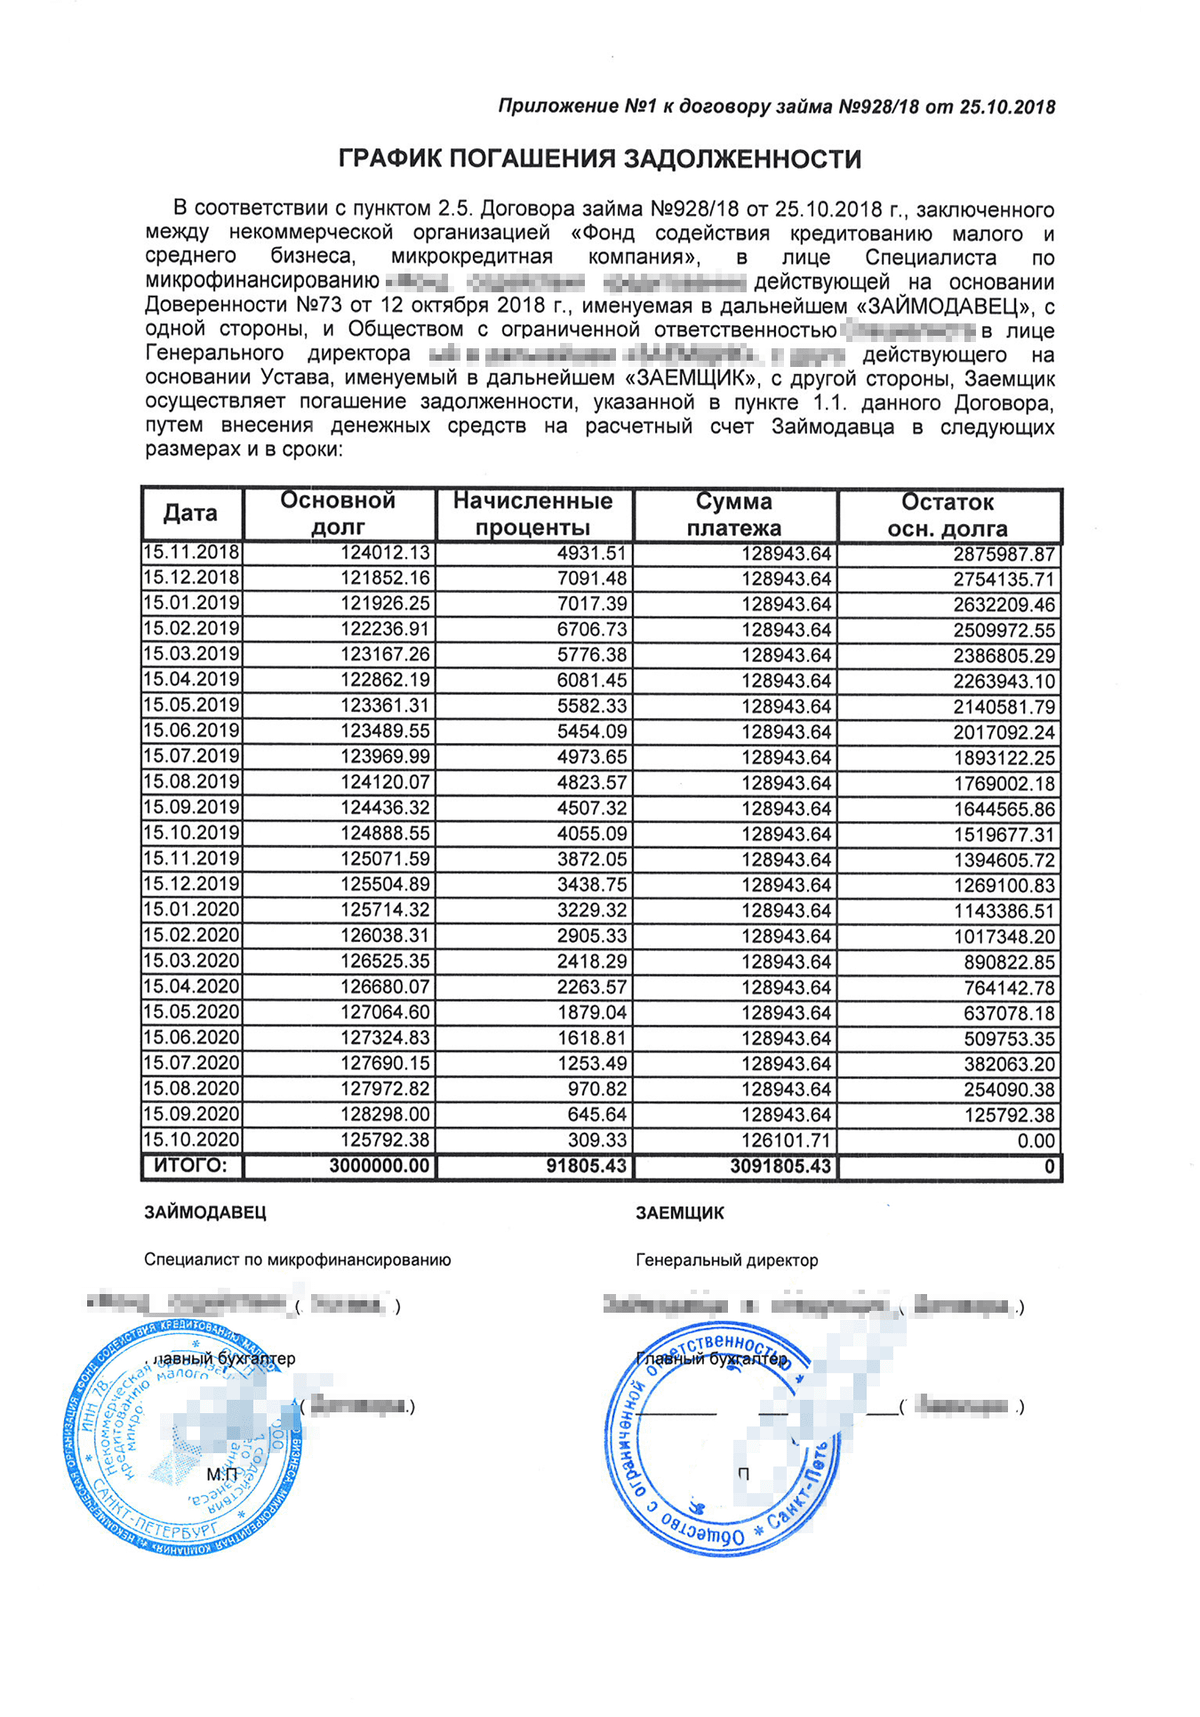 Выплата ежемесячно, равными платежами, в месяц — 128 943,64 рублей